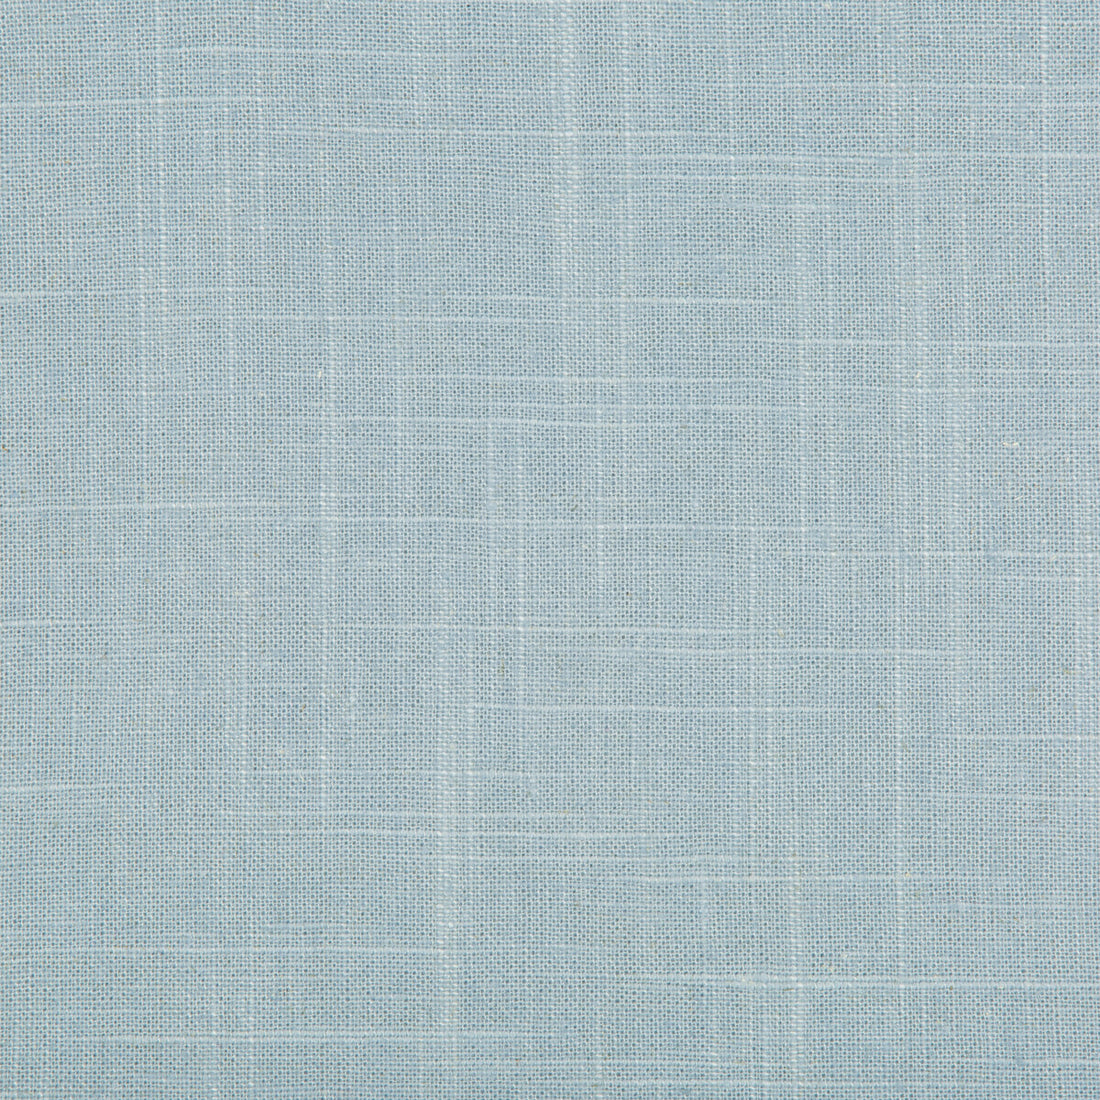 Kravet Basics fabric in 30808-15 color - pattern 30808.15.0 - by Kravet Basics